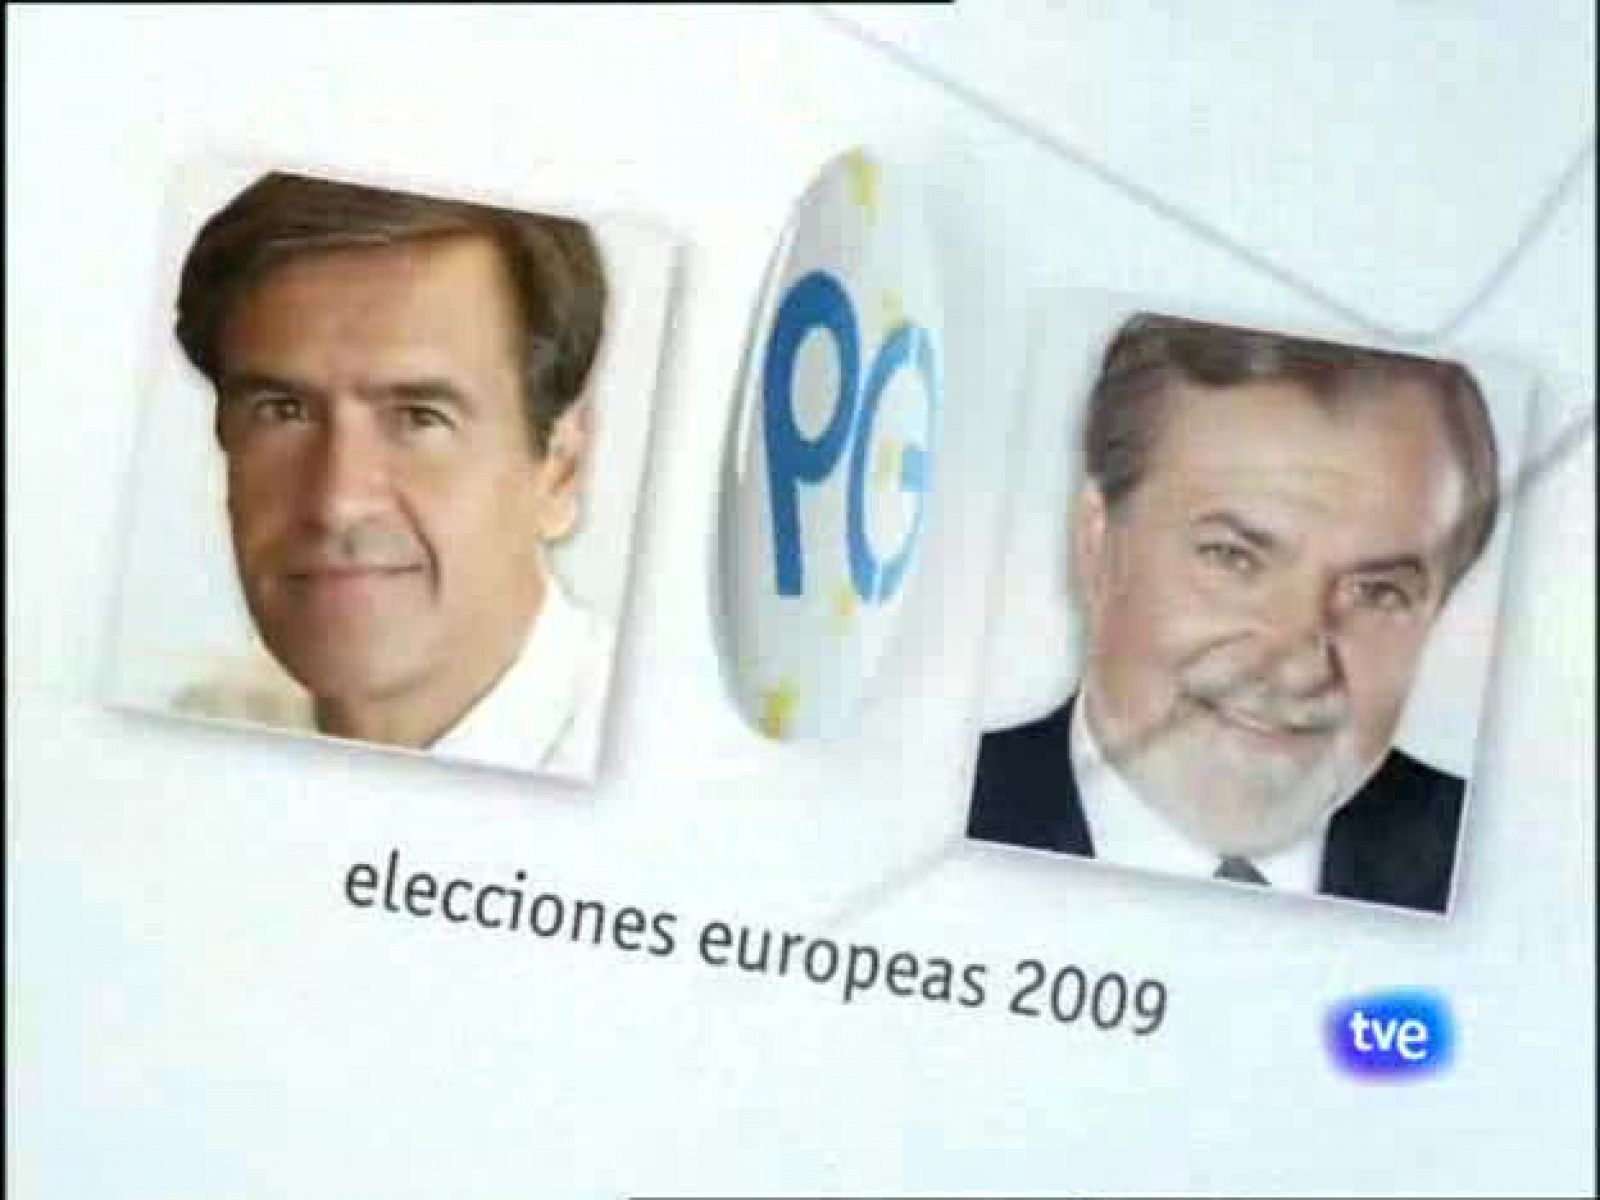 Especial informativo - Elecciones europeas 2009